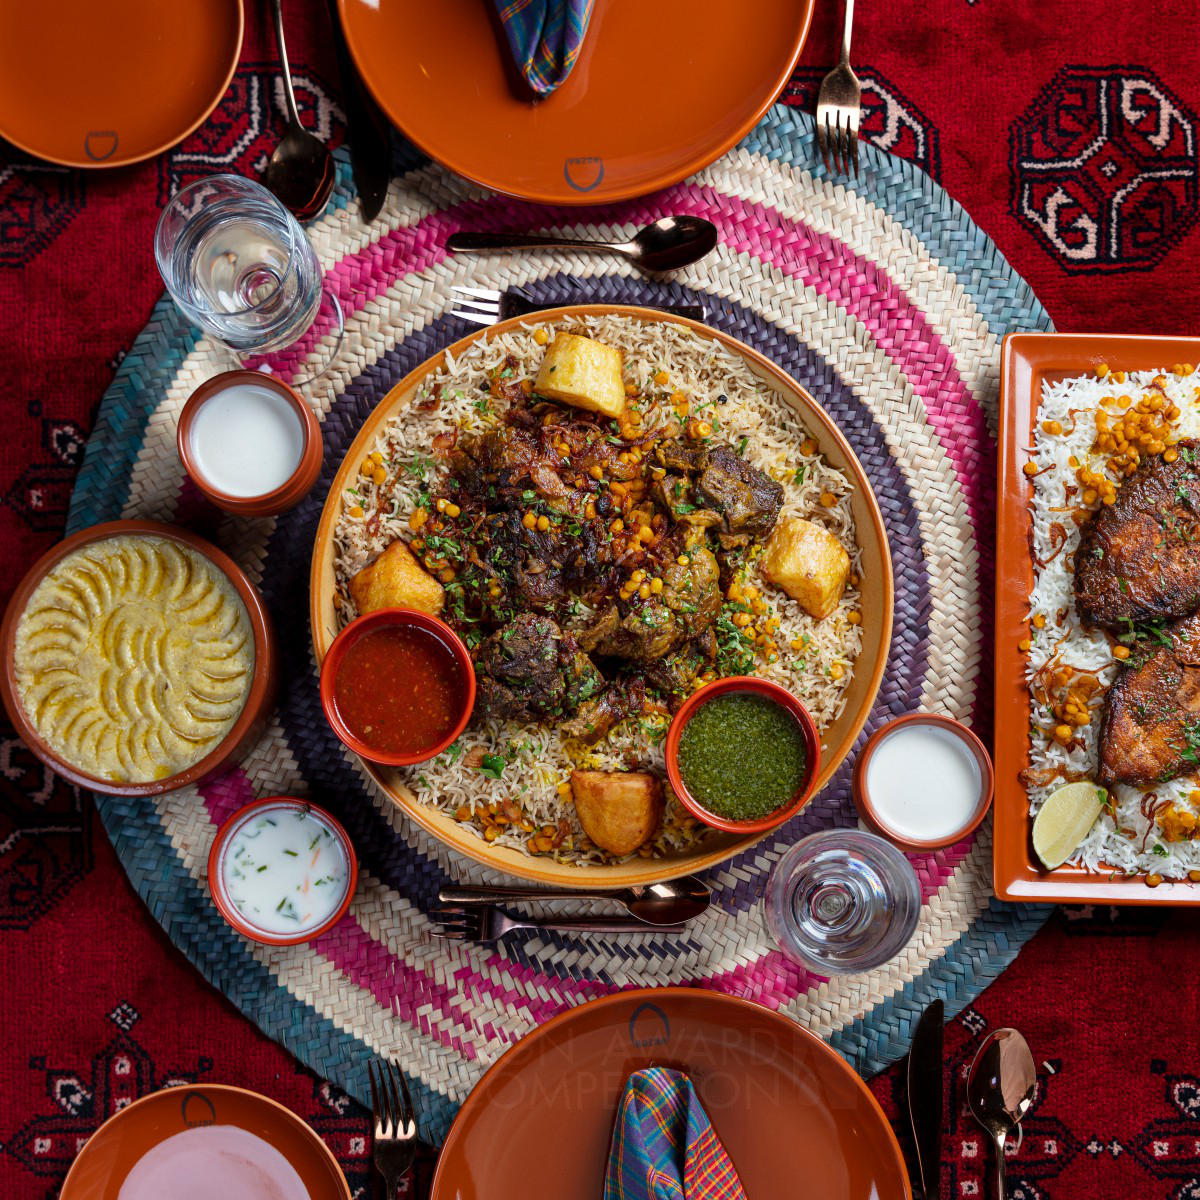 Rozna: A Taste of Oman's Heritage in Fine Dining